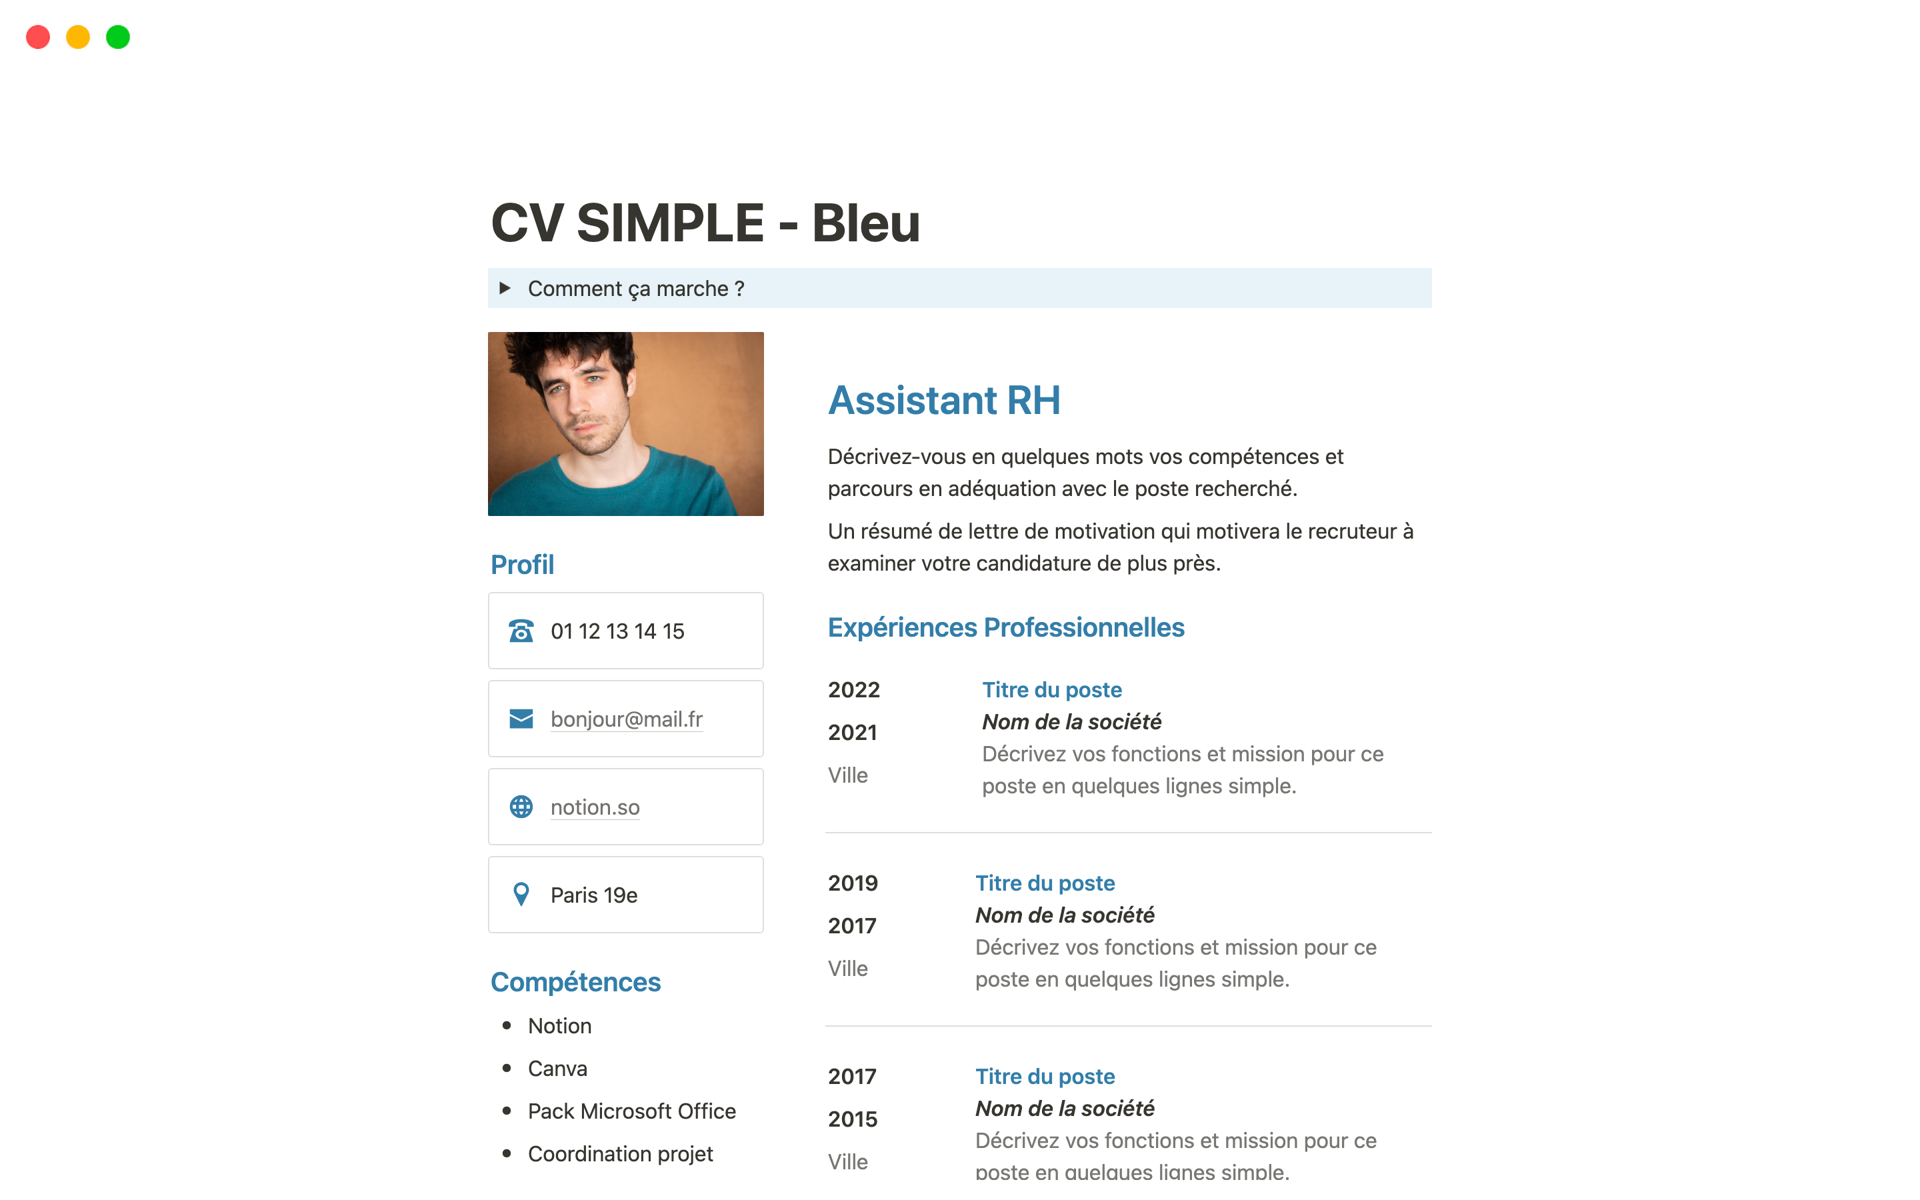 Vista previa de una plantilla para CV simple bleu en français